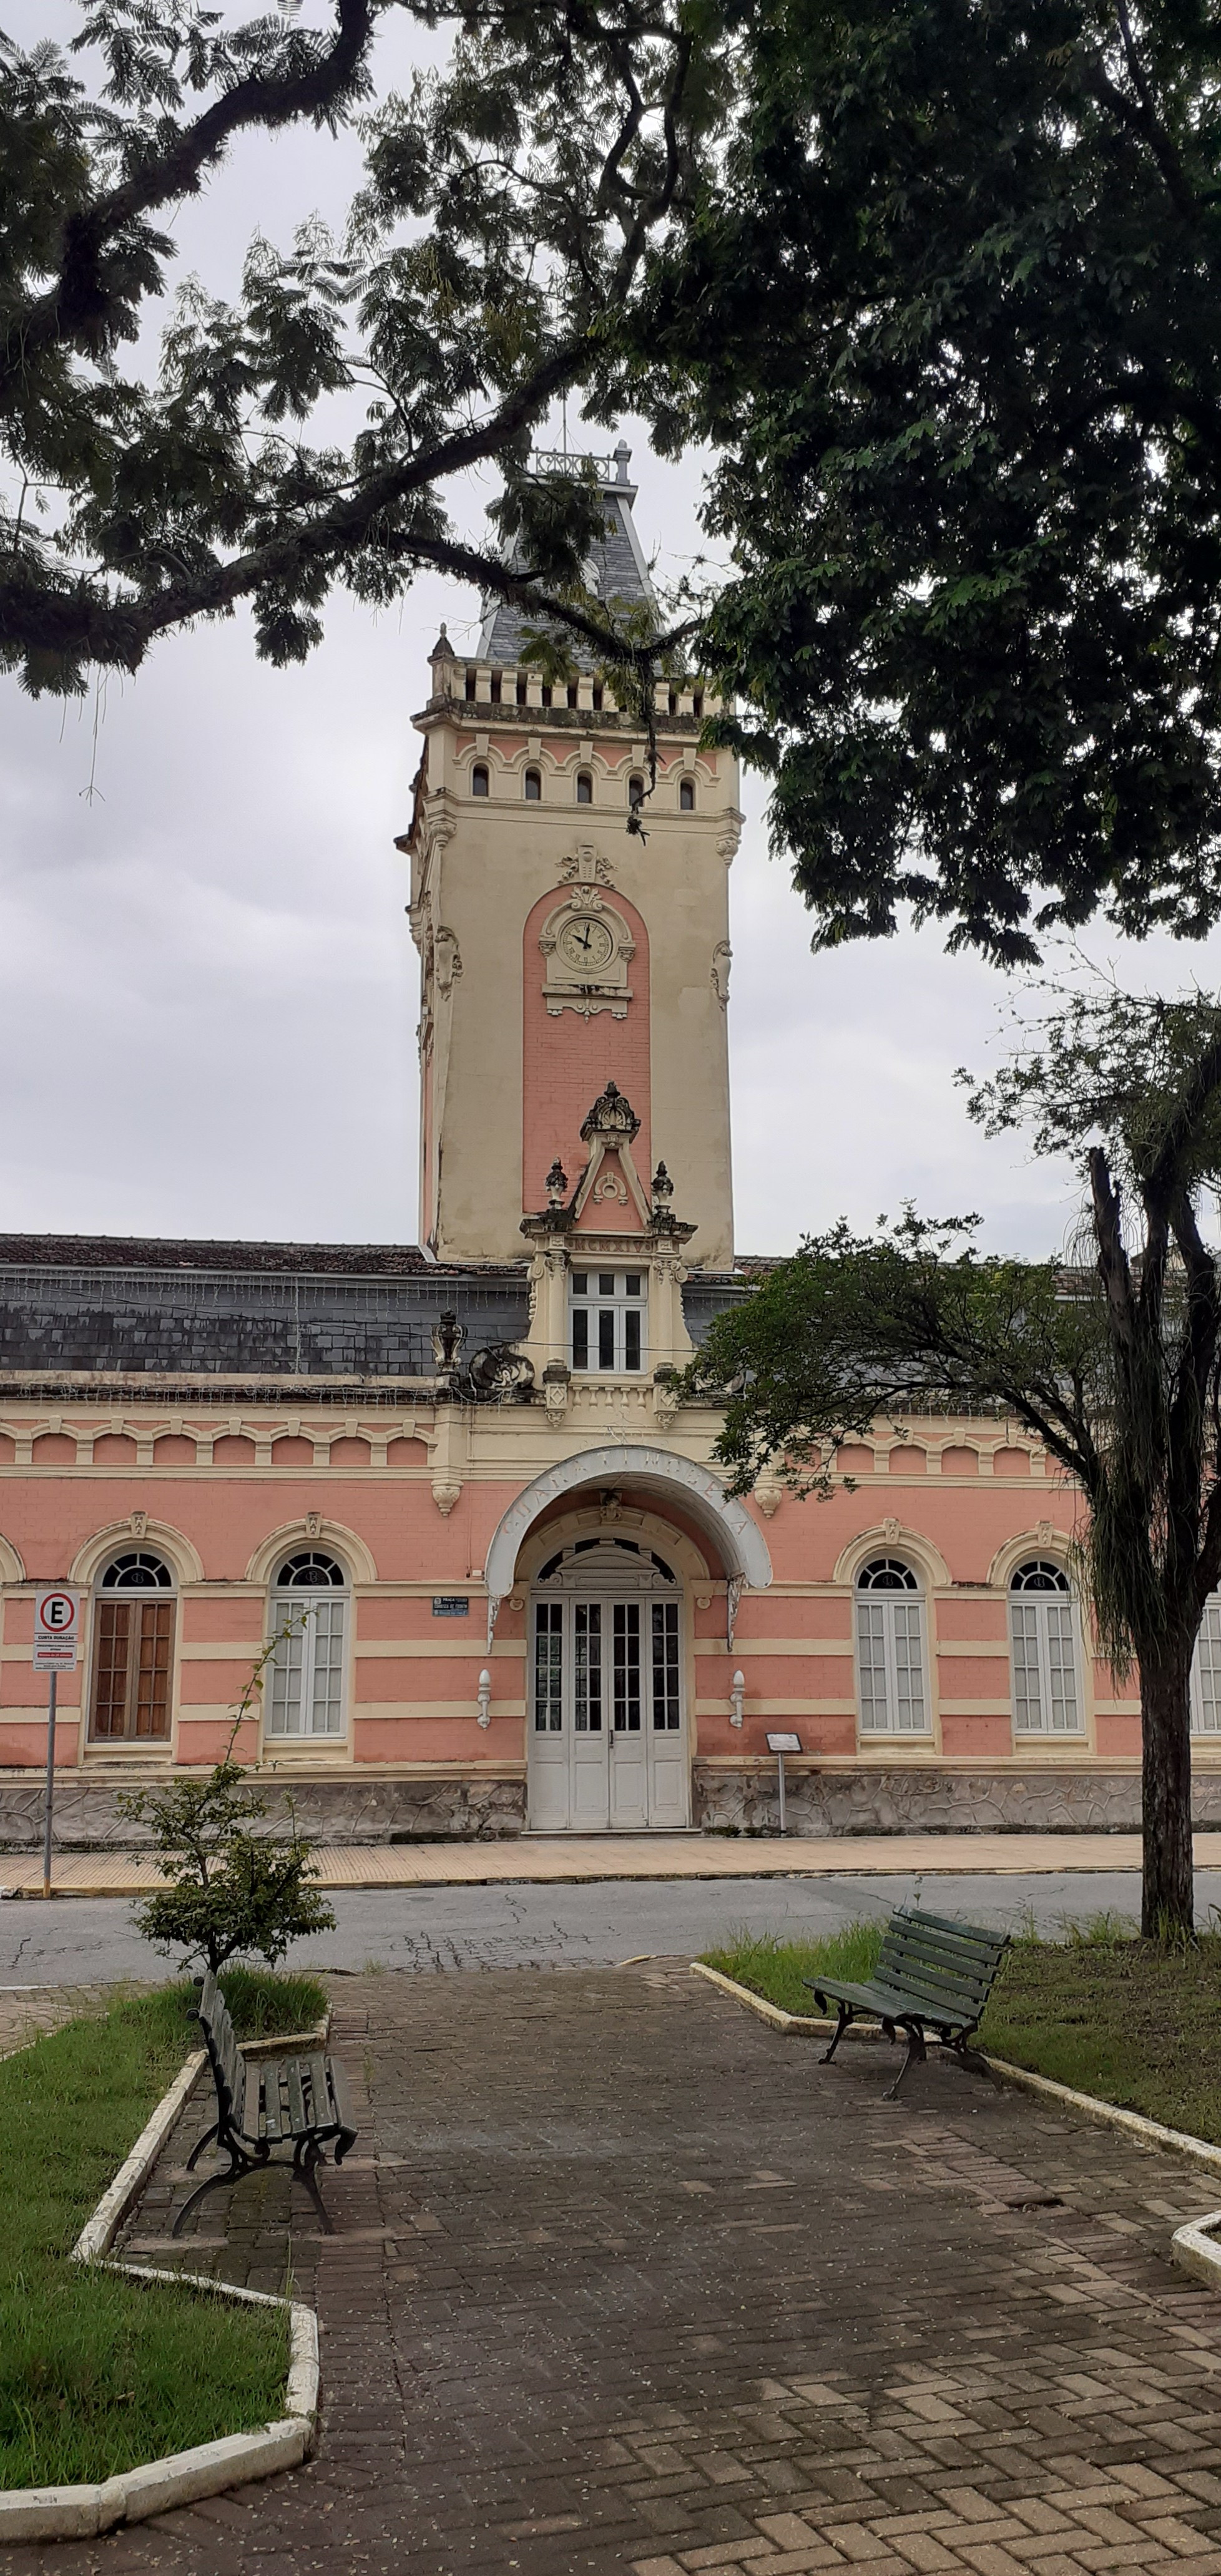 Train Station XIX century. City of Guaratinguetá, São Paulo State, Brazil.